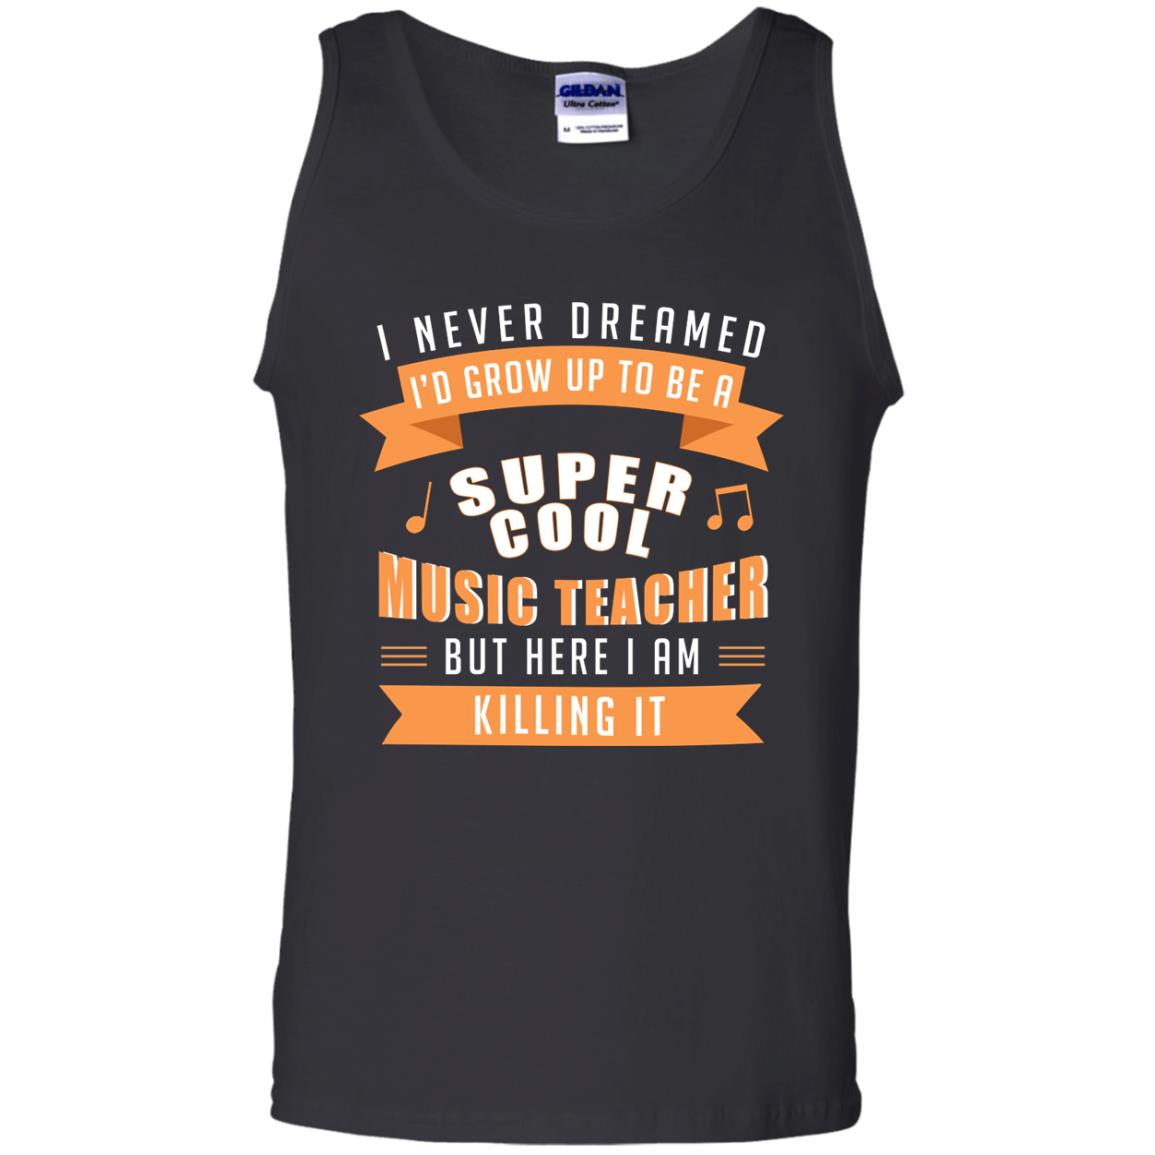 I Never Dreamed Id Grow Up To Be A Super Cool Music Teacher ShirtG220 Gildan 100% Cotton Tank Top